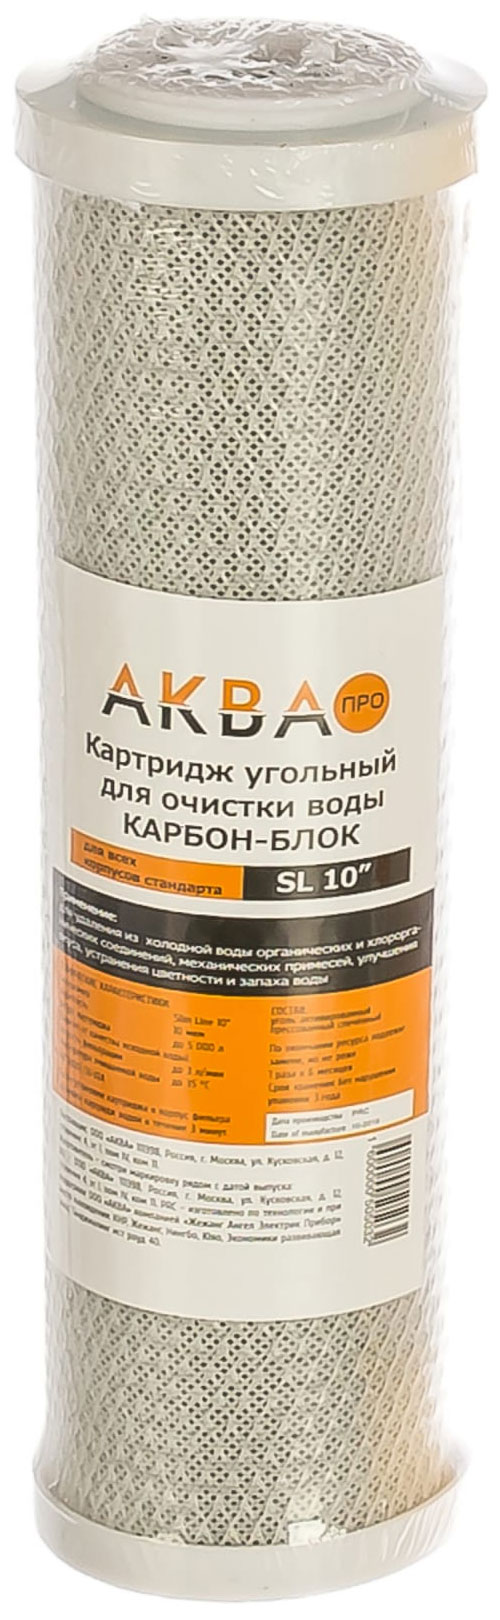 Картридж угольный Аква Про 10SL-10 мкм (активированный уголь), 409